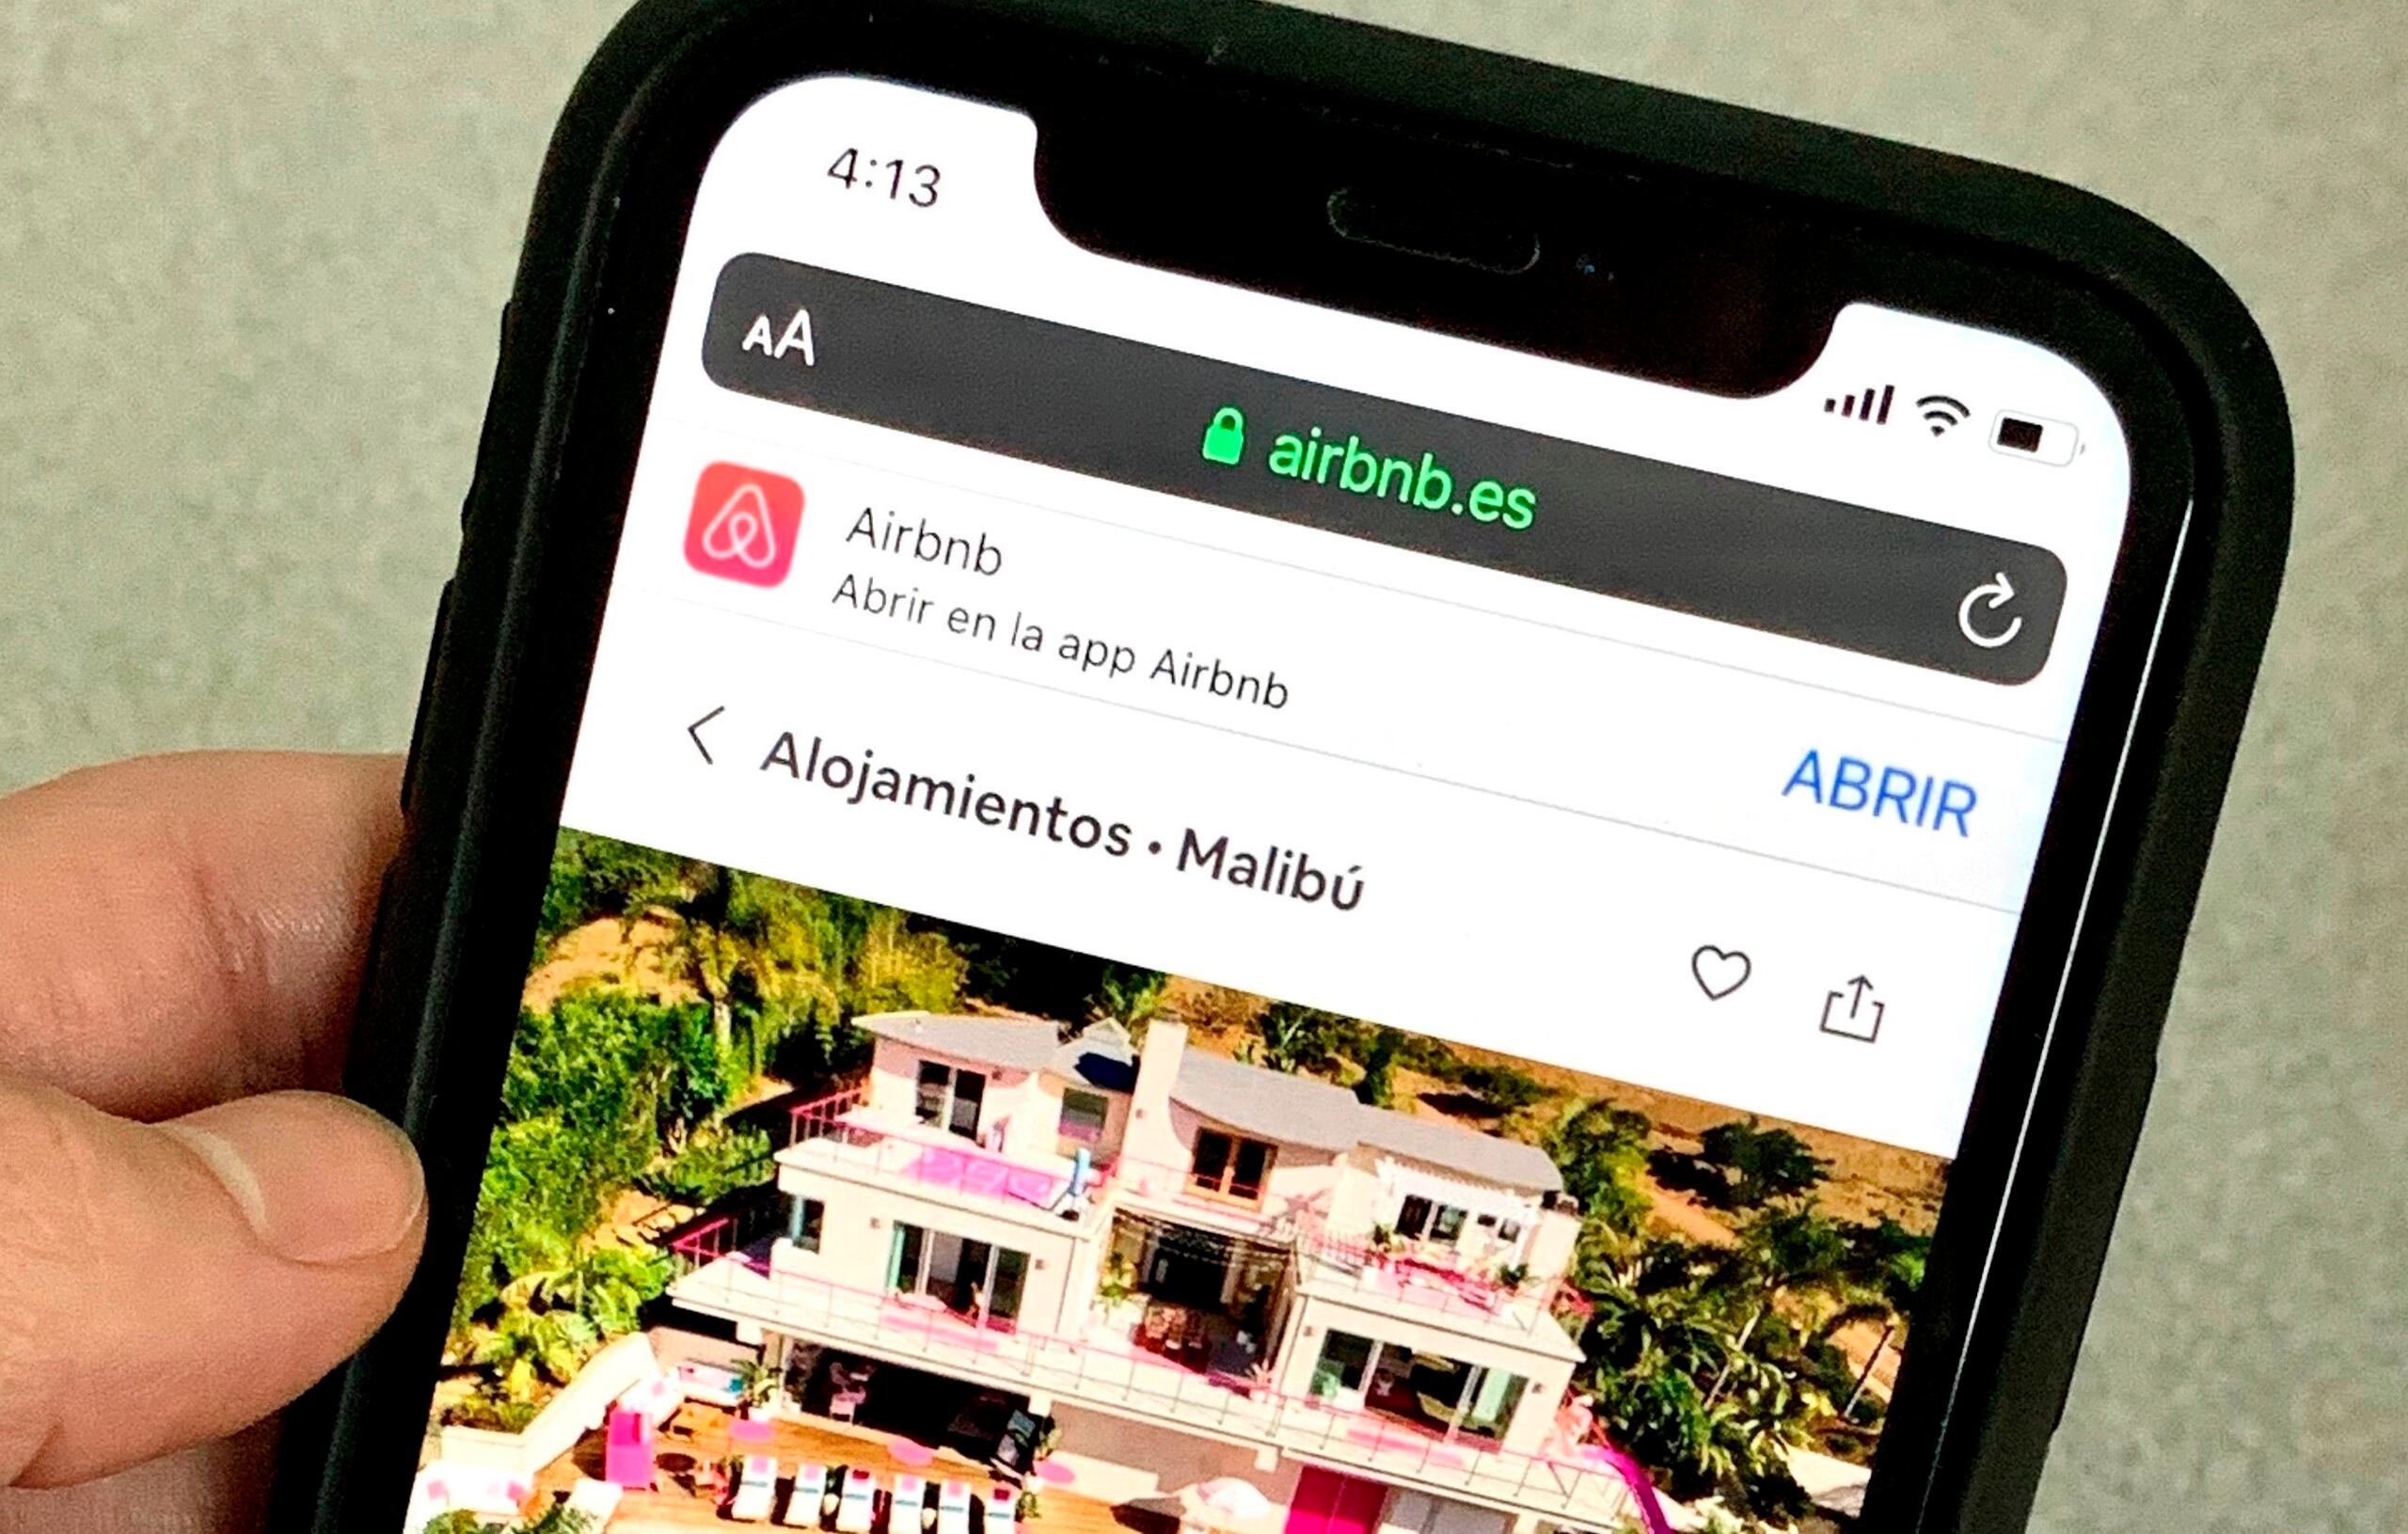 Con esta medida, Airbnb busca atajar de manera permanente las fiestas escandalosas que suelen traer problemas en las comunidades donde ubican los alquileres a corto plazo de sus anfitriones.